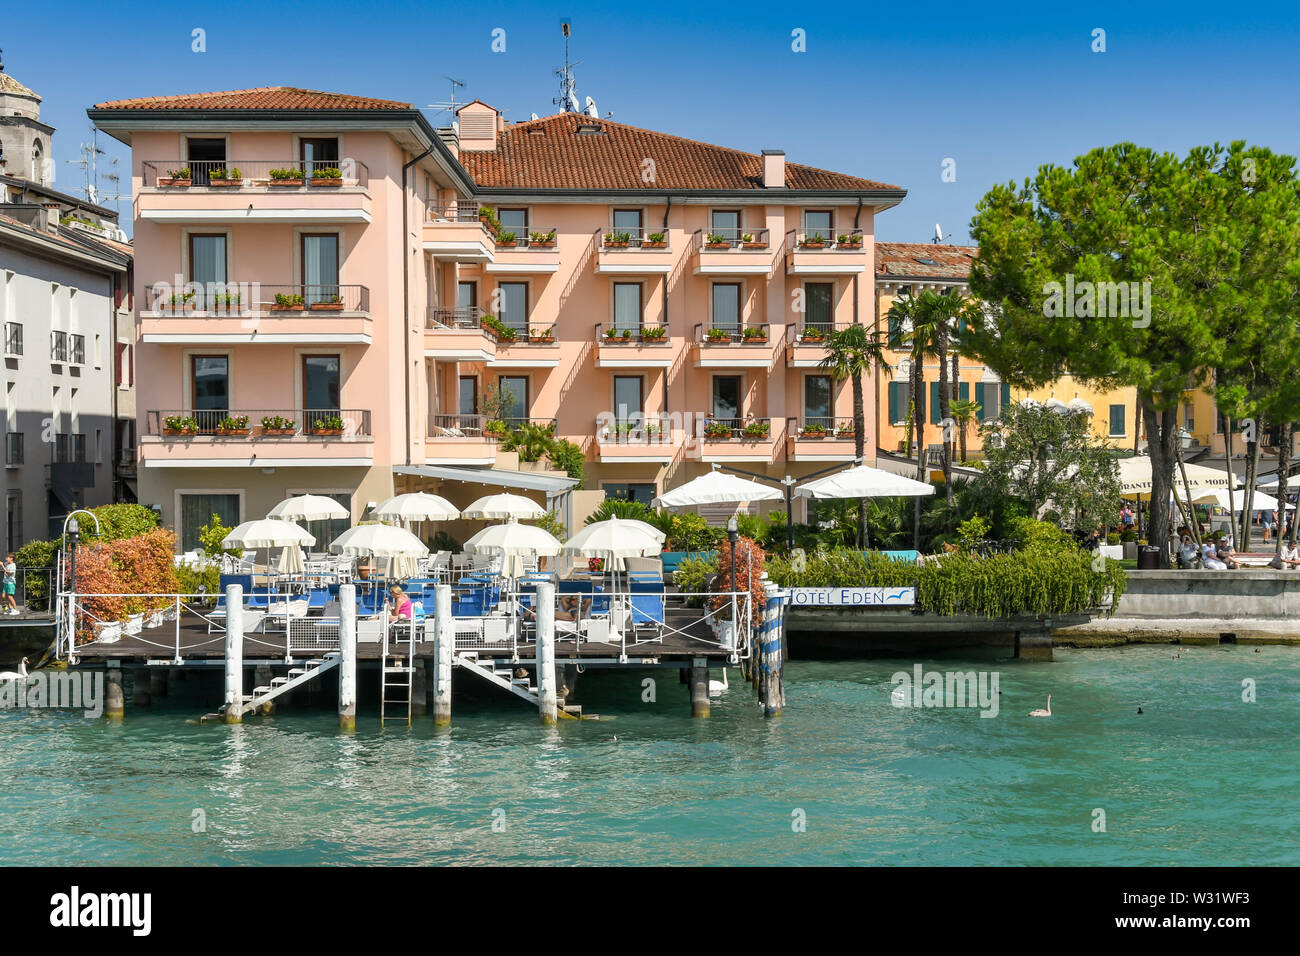 SIRMIONE SUL LAGO DI GARDA, Italia - Settembre 2018: Hotel Eden sul lago nella località di Sirmione sul Lago di Garda. Foto Stock